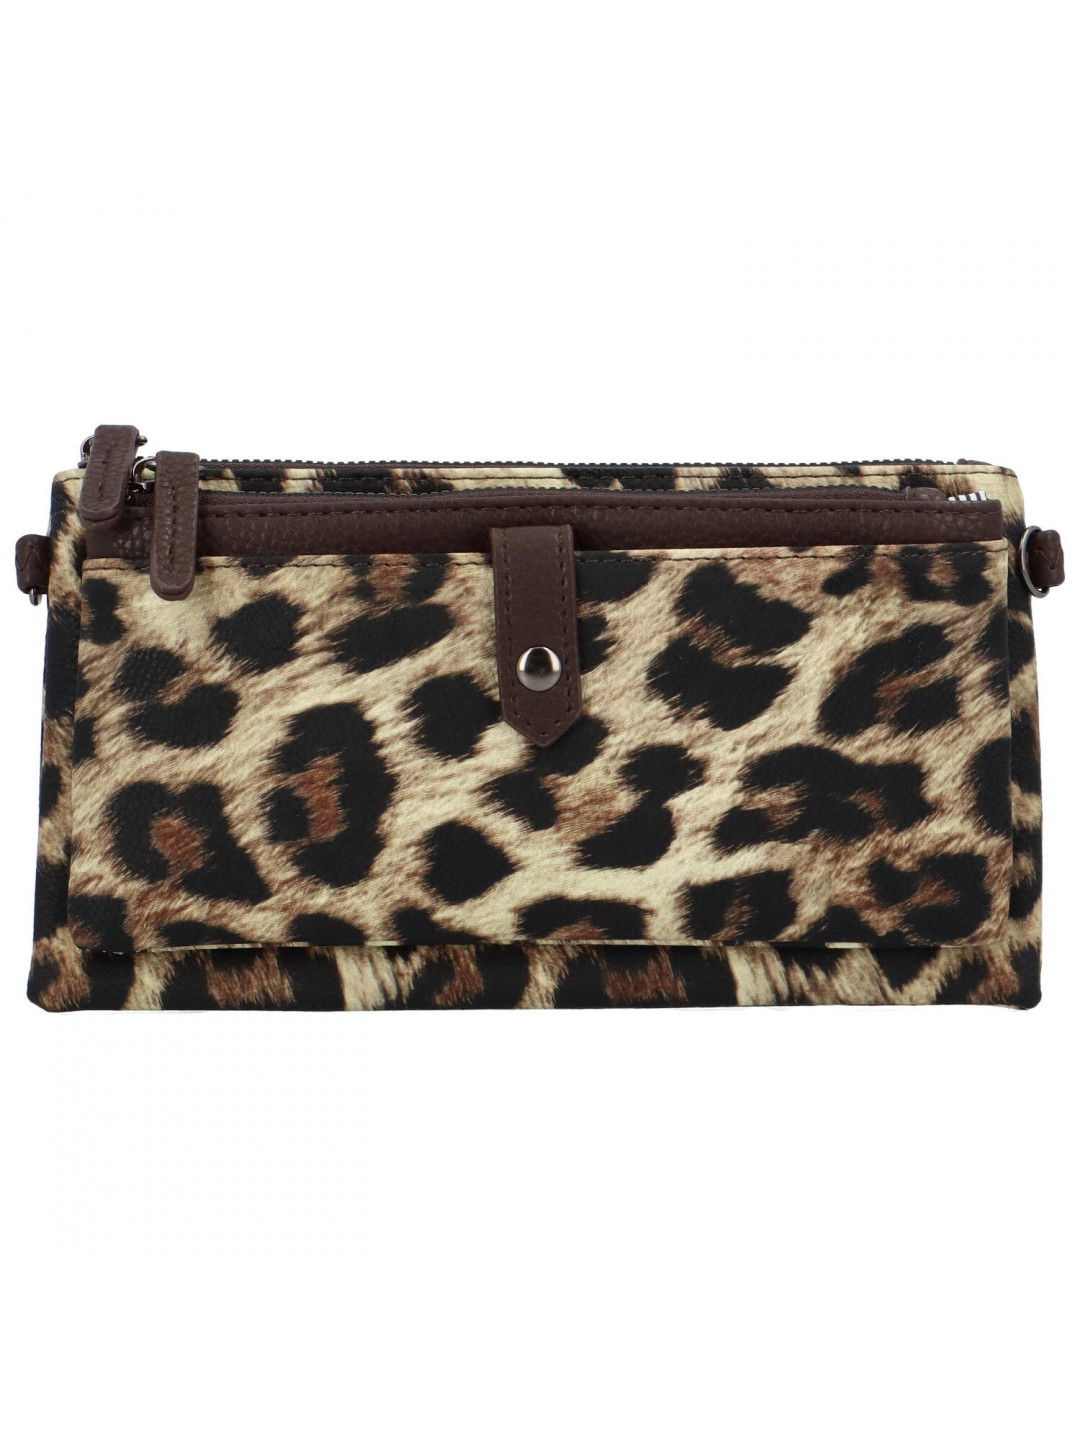 Trendová koženková dámská kabelka Fopi leopard khaki tmavě hnědá